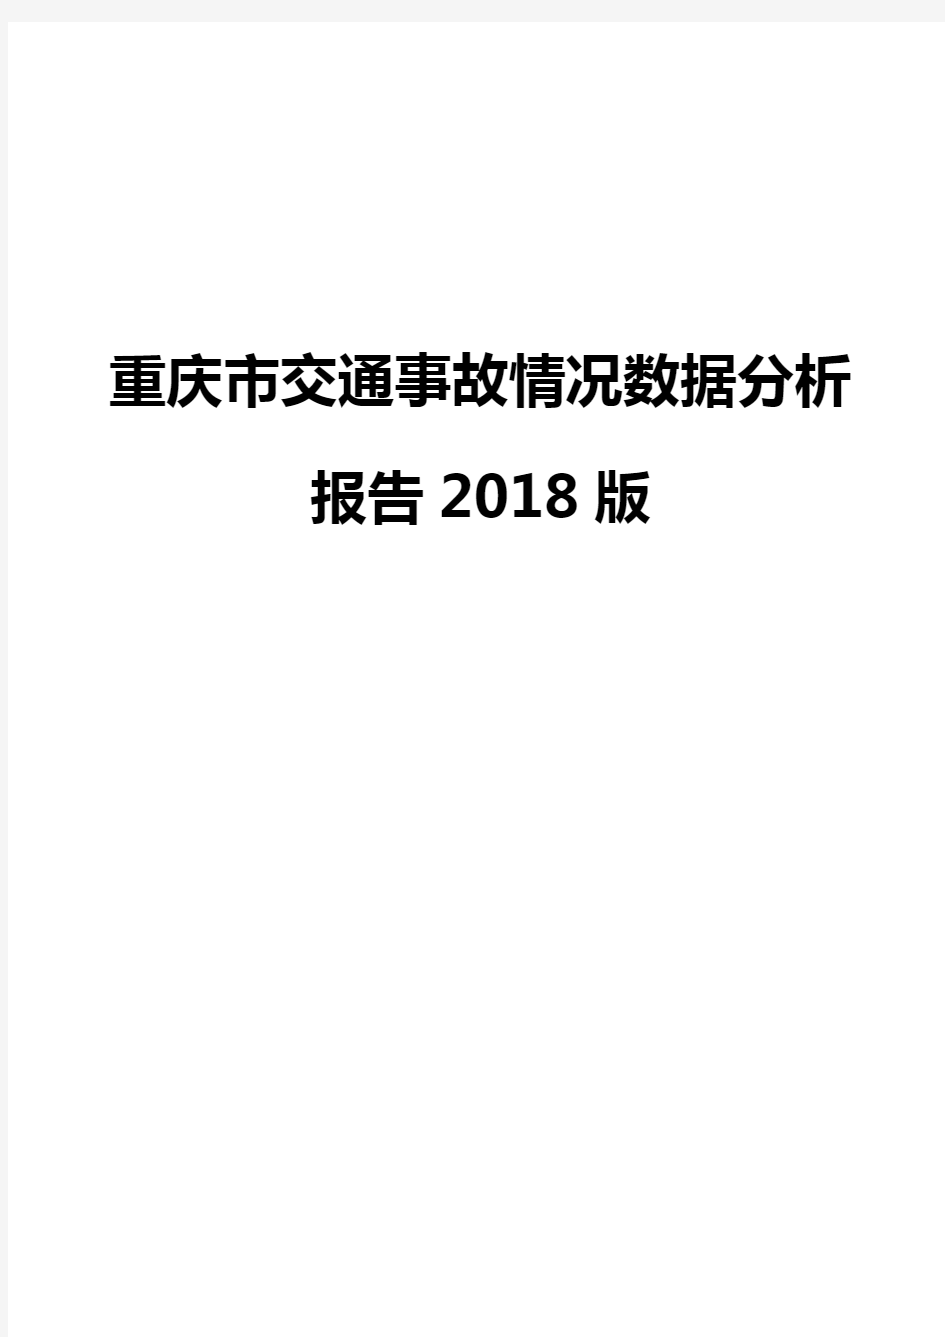 重庆市交通事故情况数据分析报告2018版